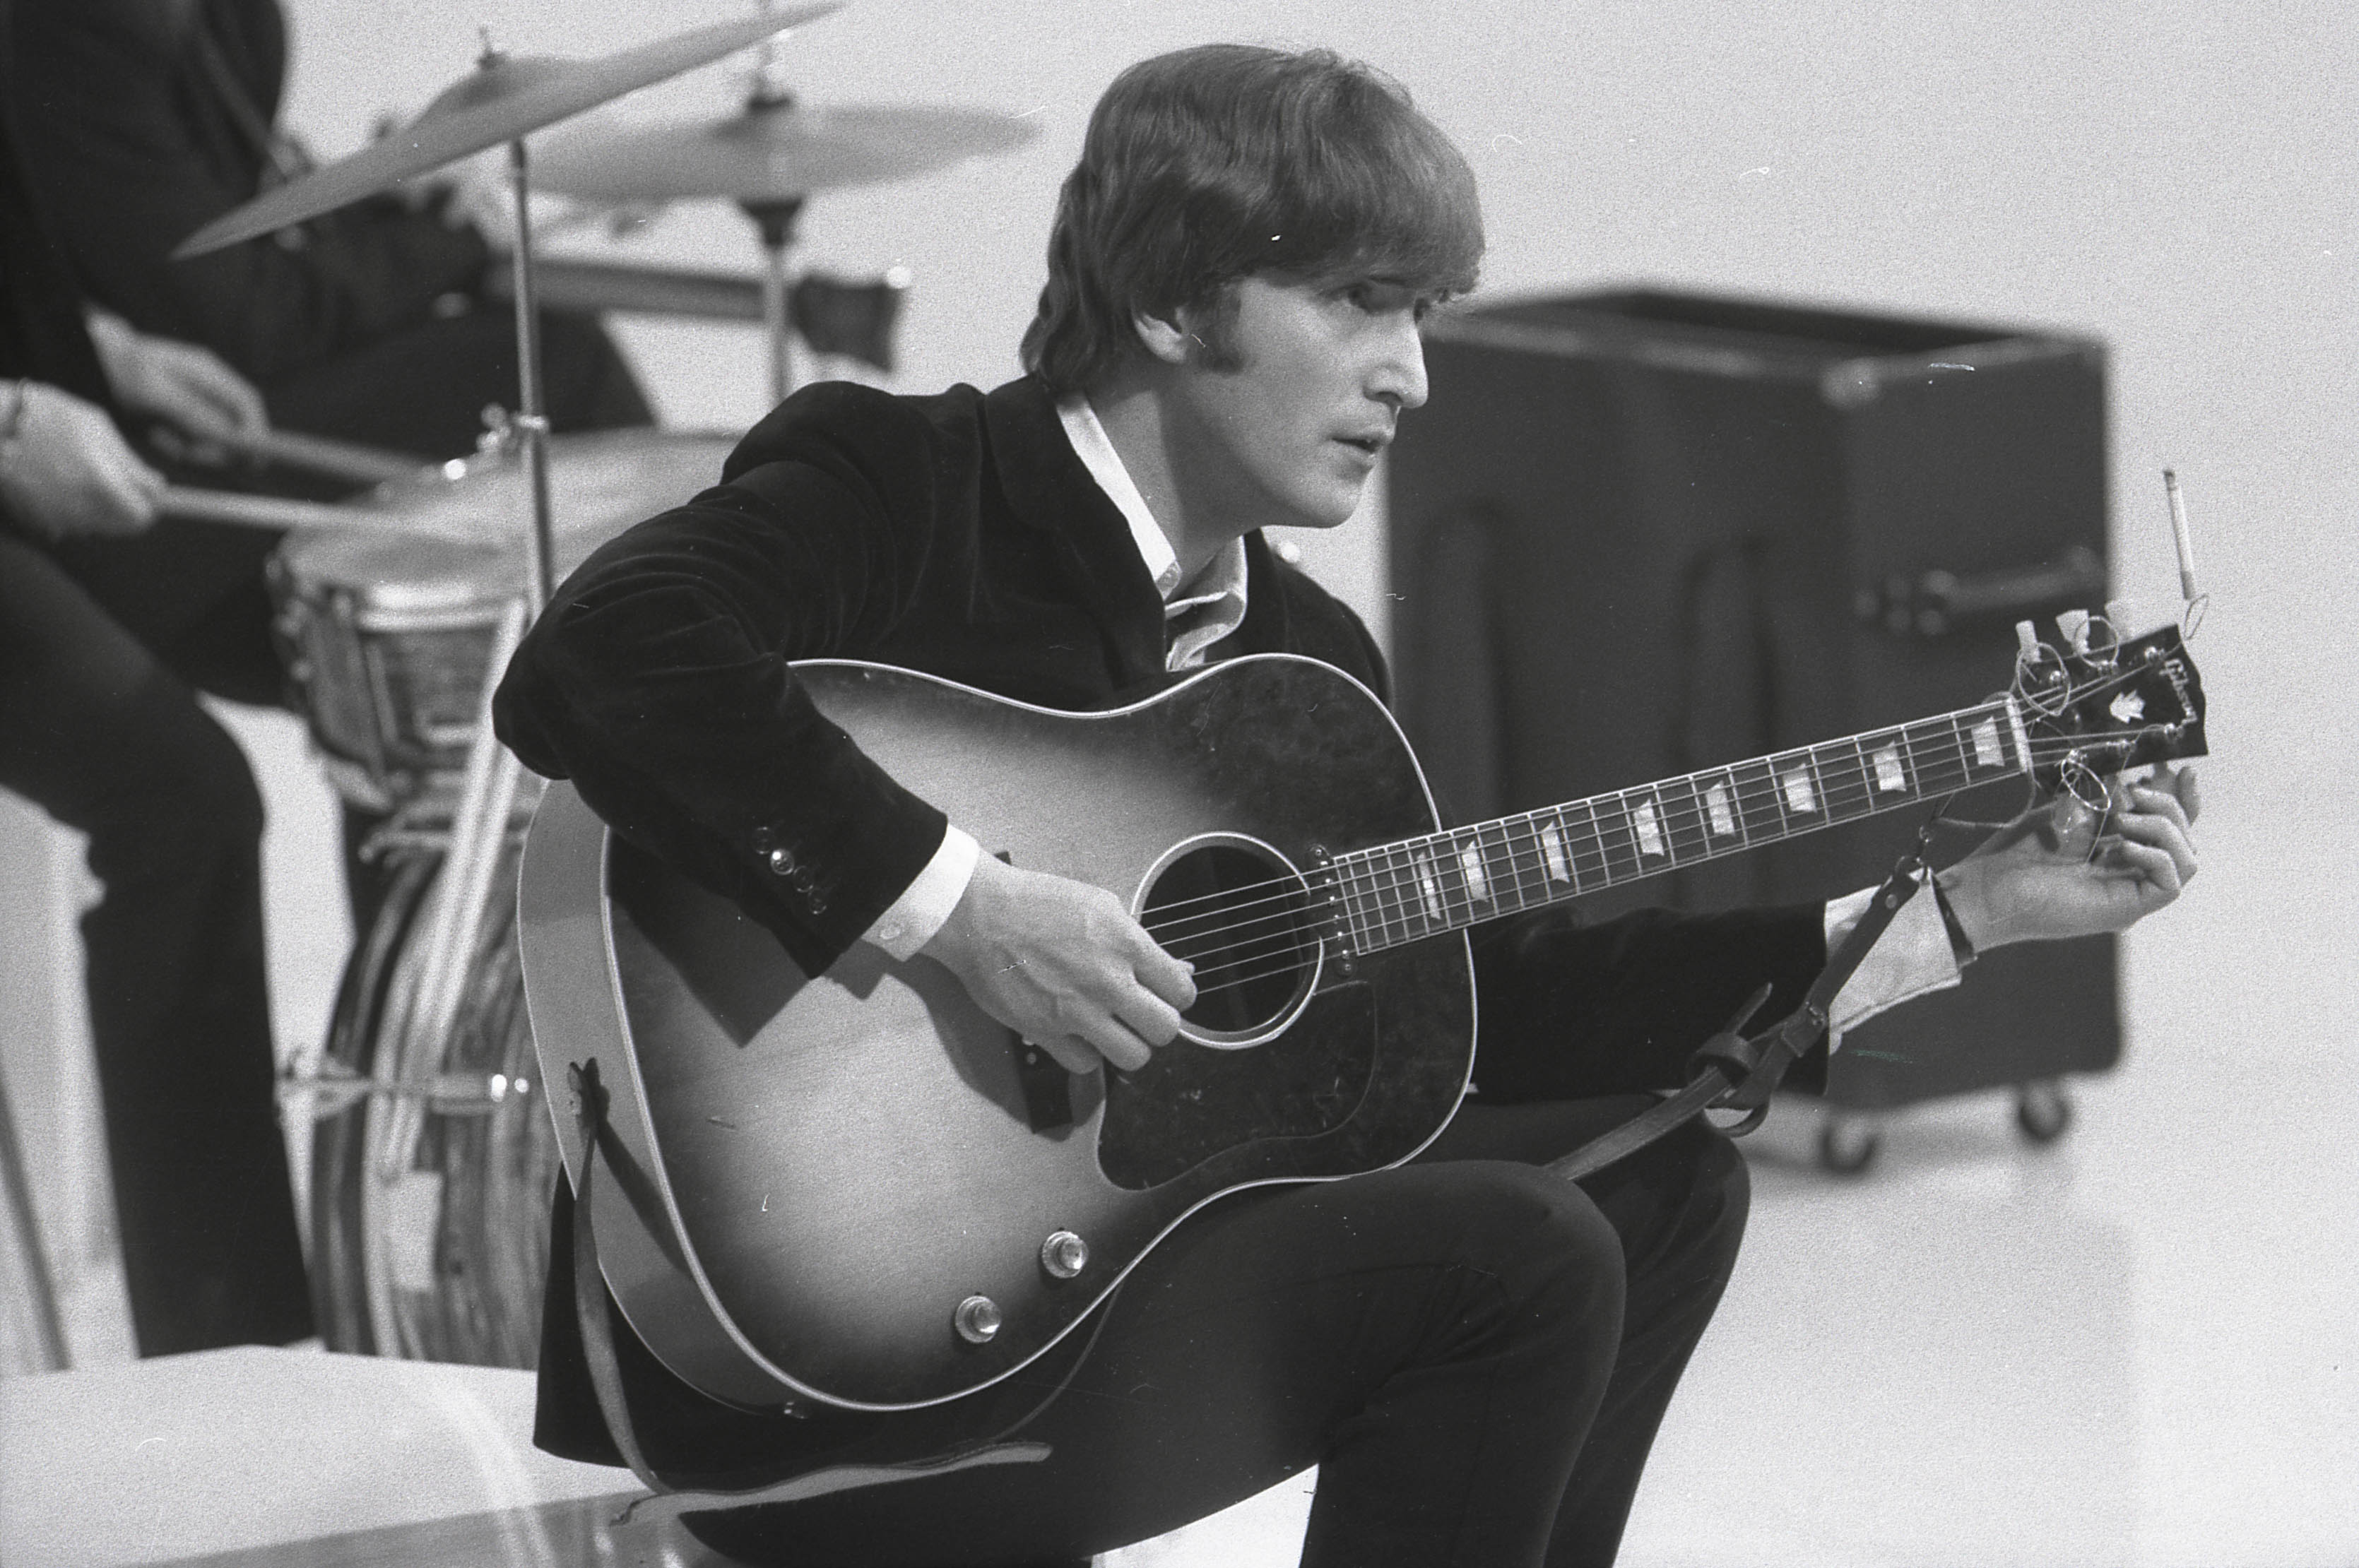 John Lennon holding a guitar